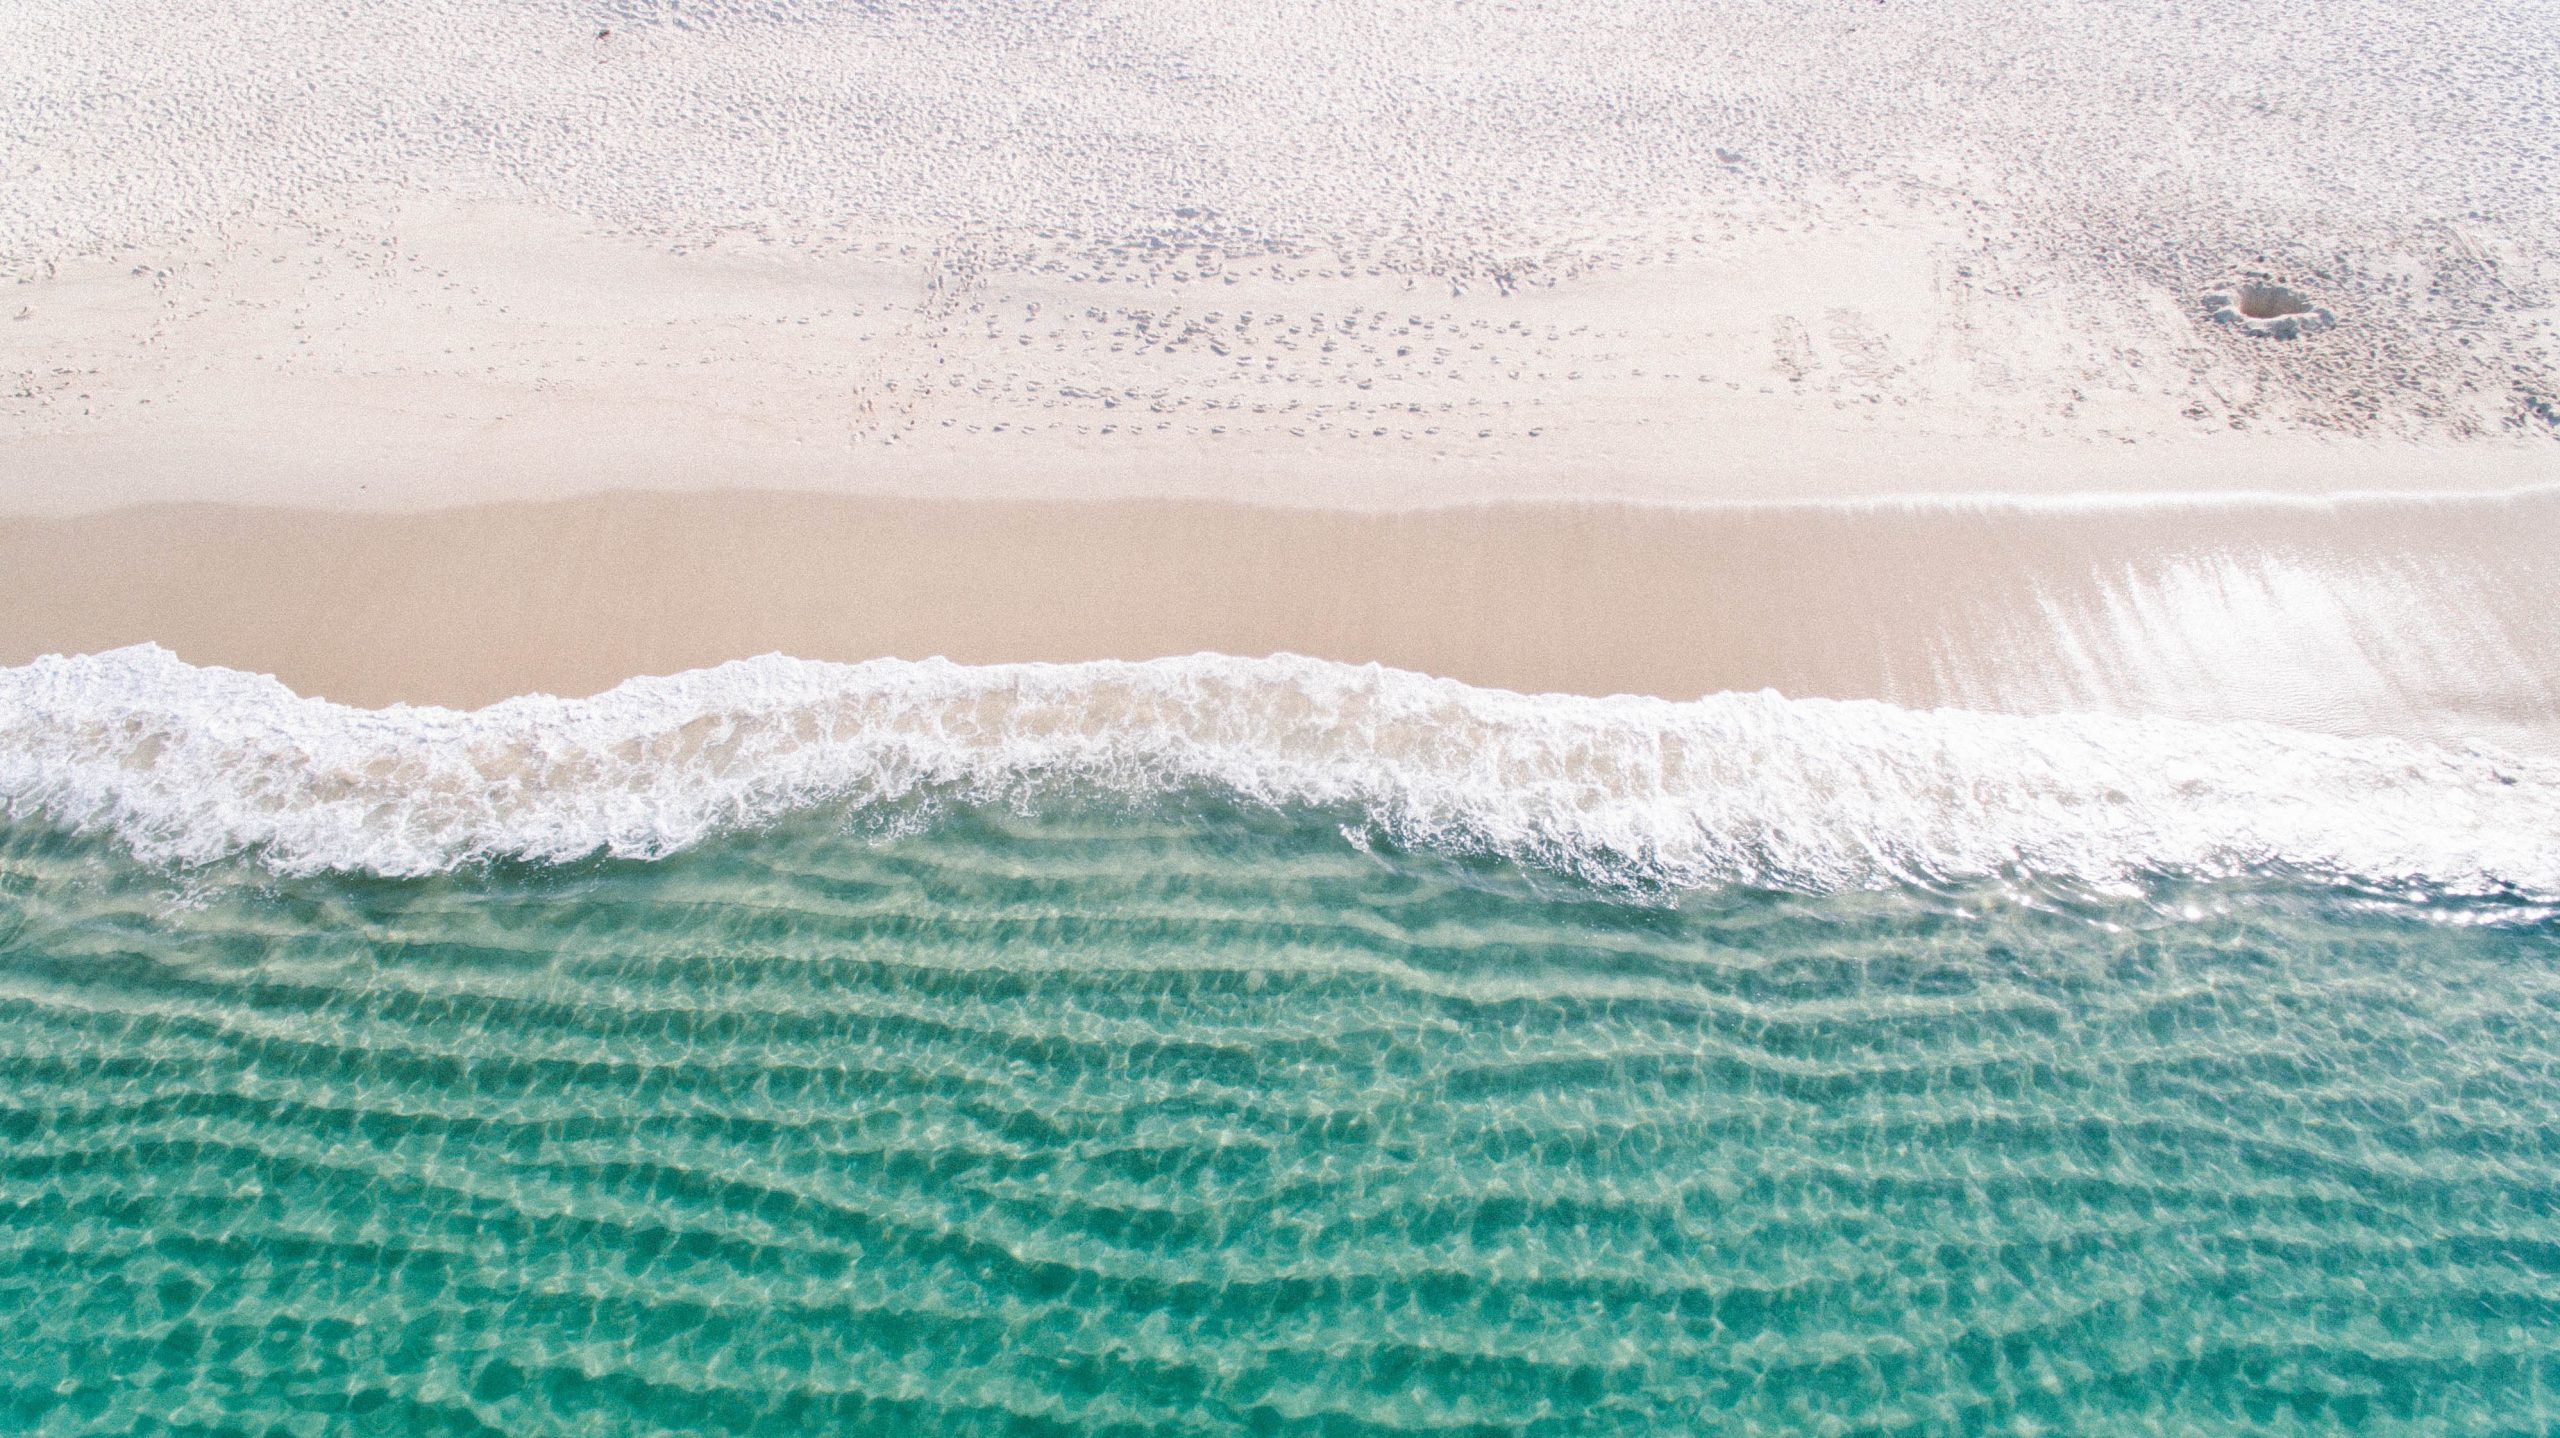 Vue aérienne d'une plage de sable blanc avec eau turquoise